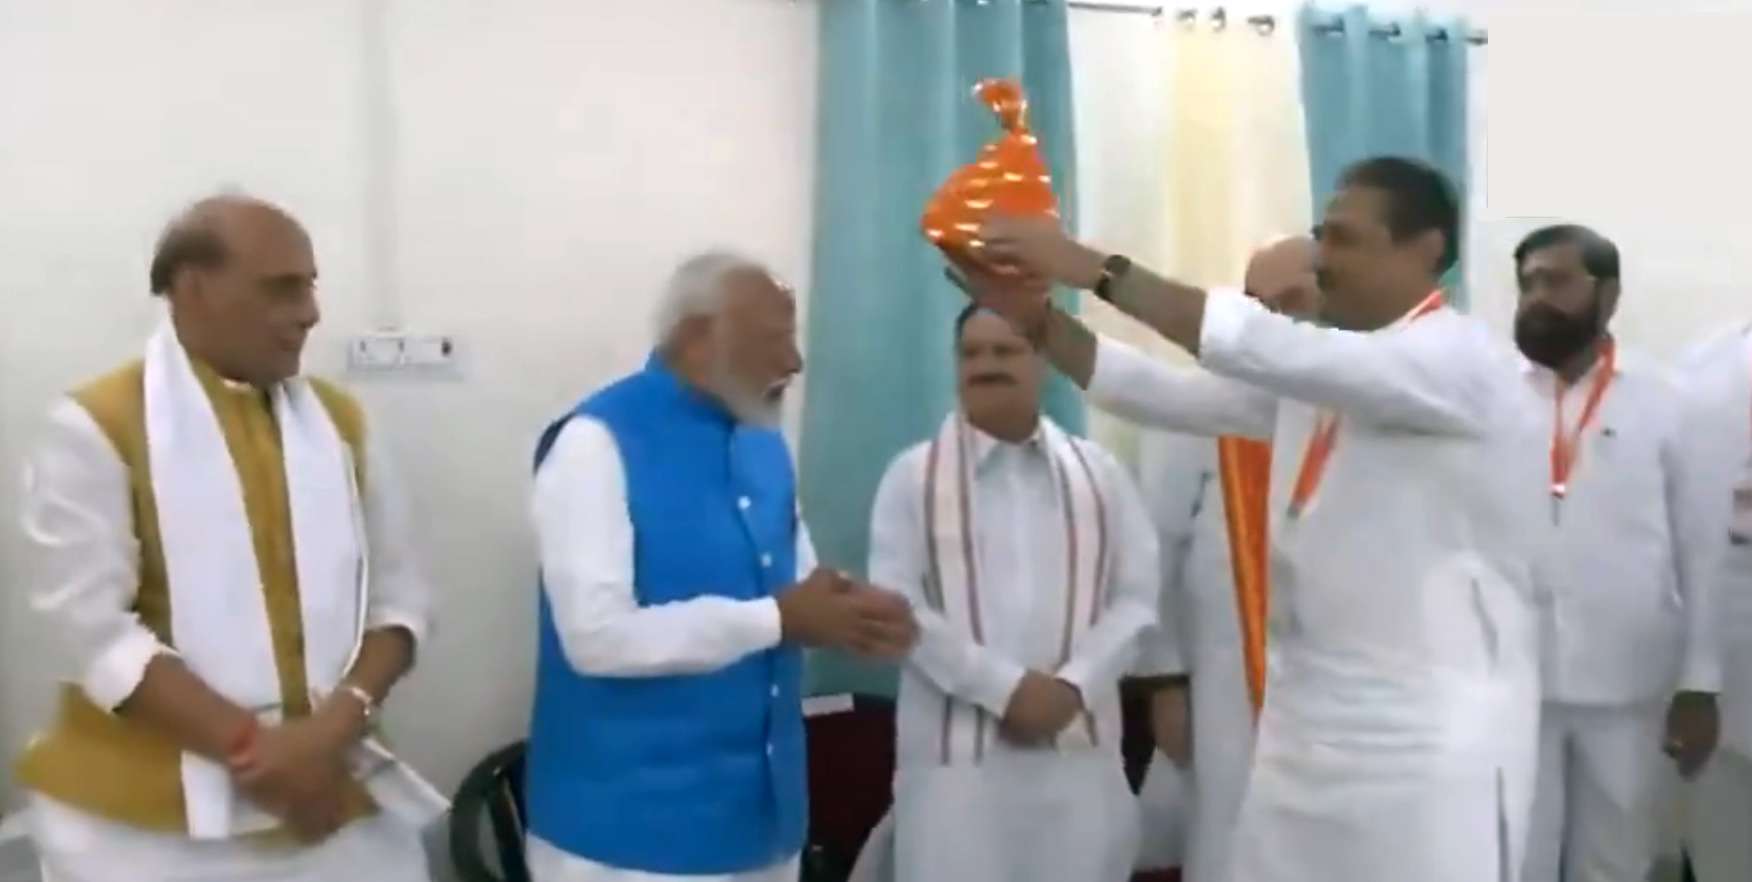 छत्रपती शिवाजी महाराजांचा जिरेटोप पंतप्रधान नरेंद्र मोदींच्या डोक्यावर ठेवून त्यांना महाराज म्हणून प्रस्तुत करणे हा छत्रपती शिवरायांचा अपमान: नाना पटोले